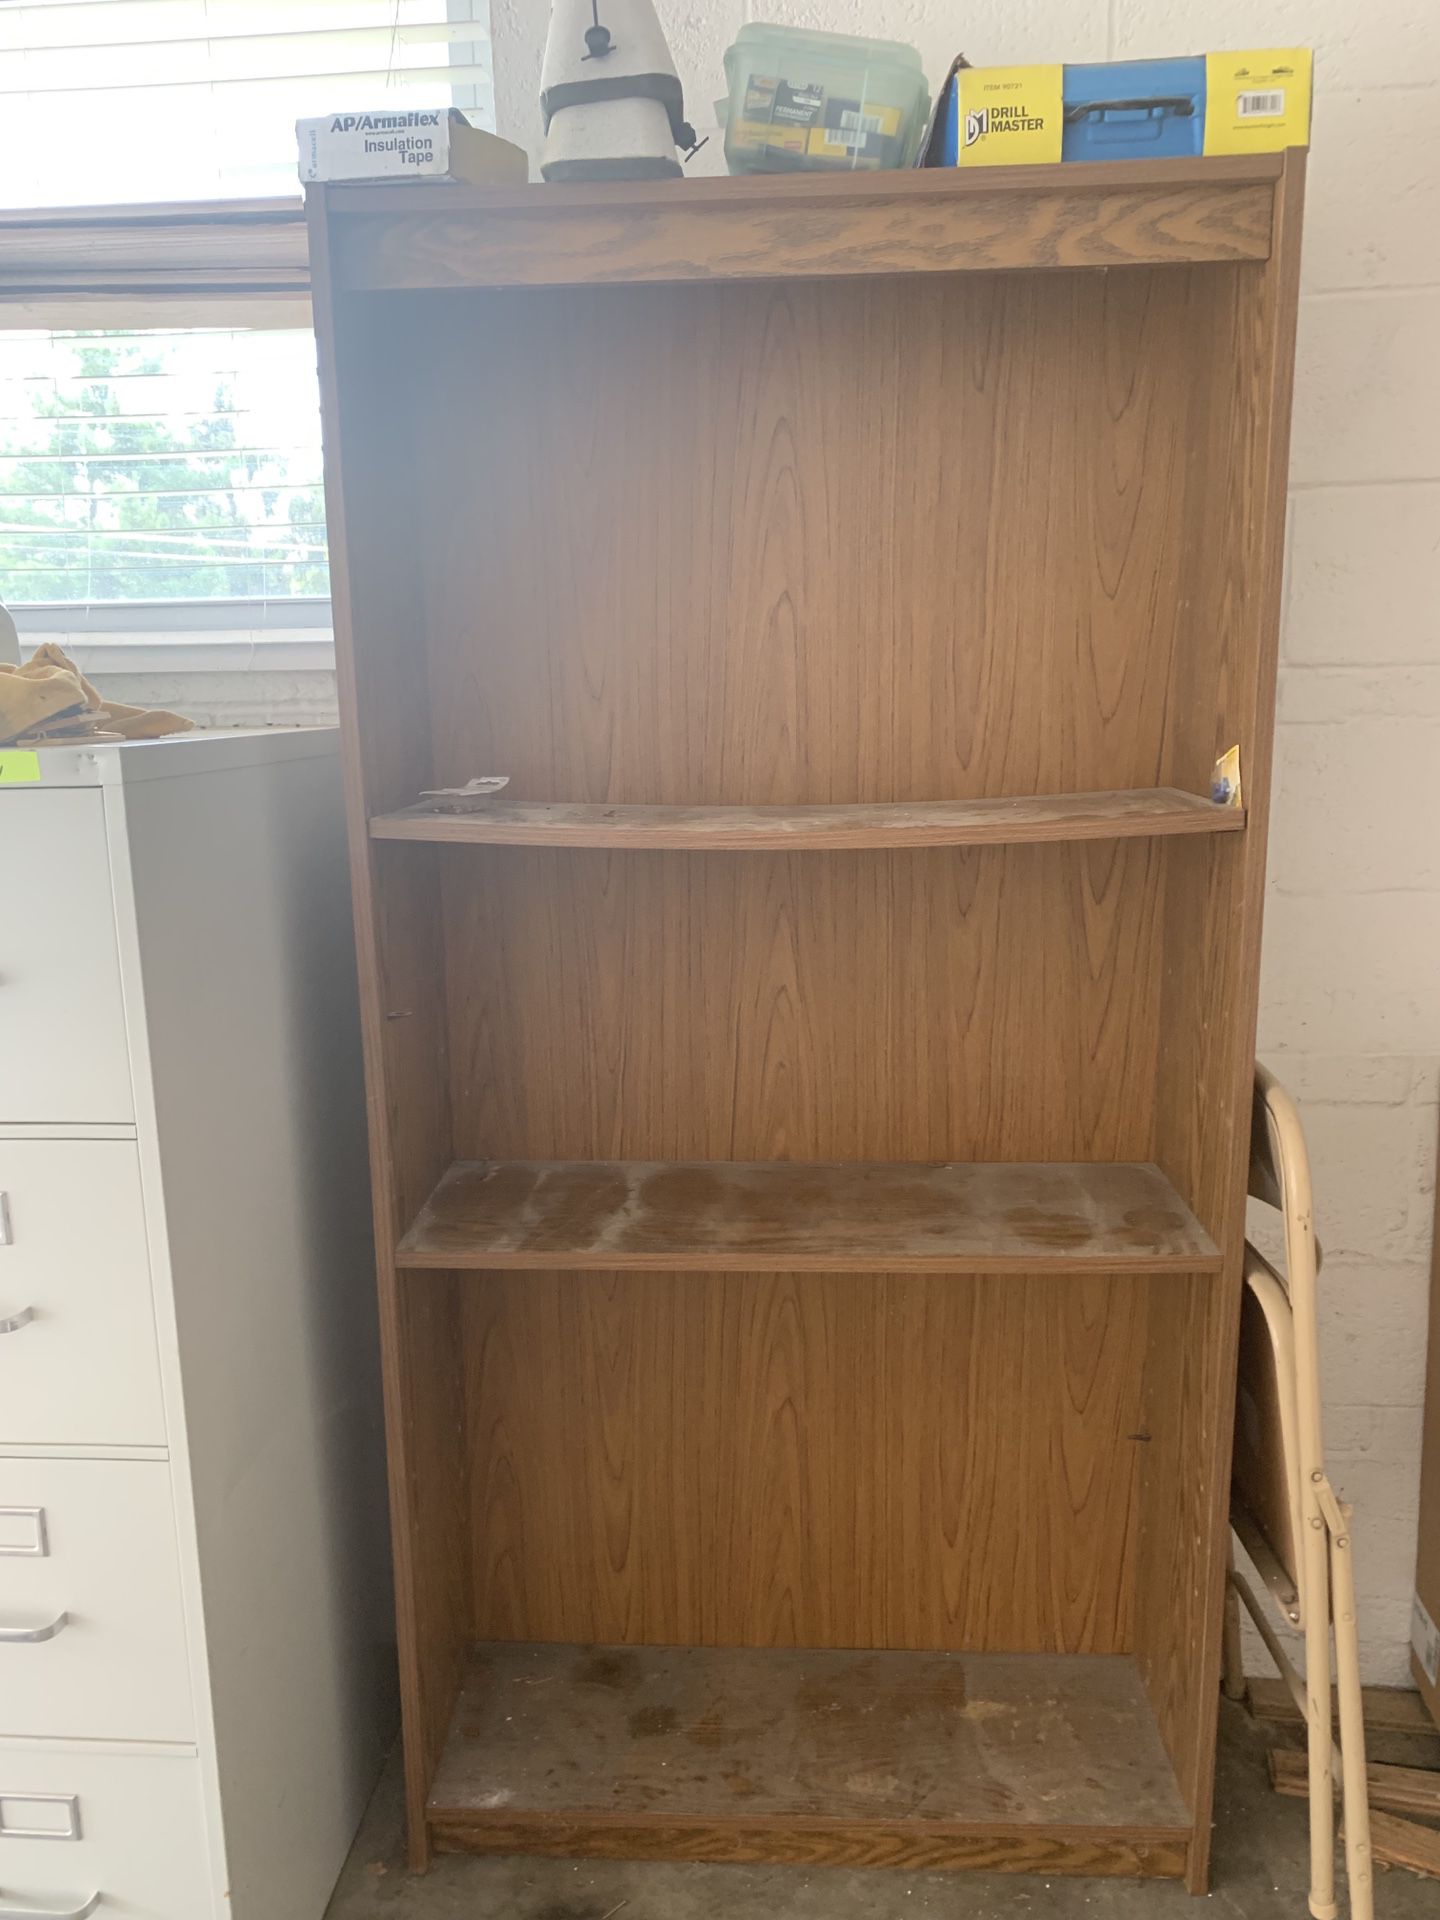 Wooden shelf / organizer